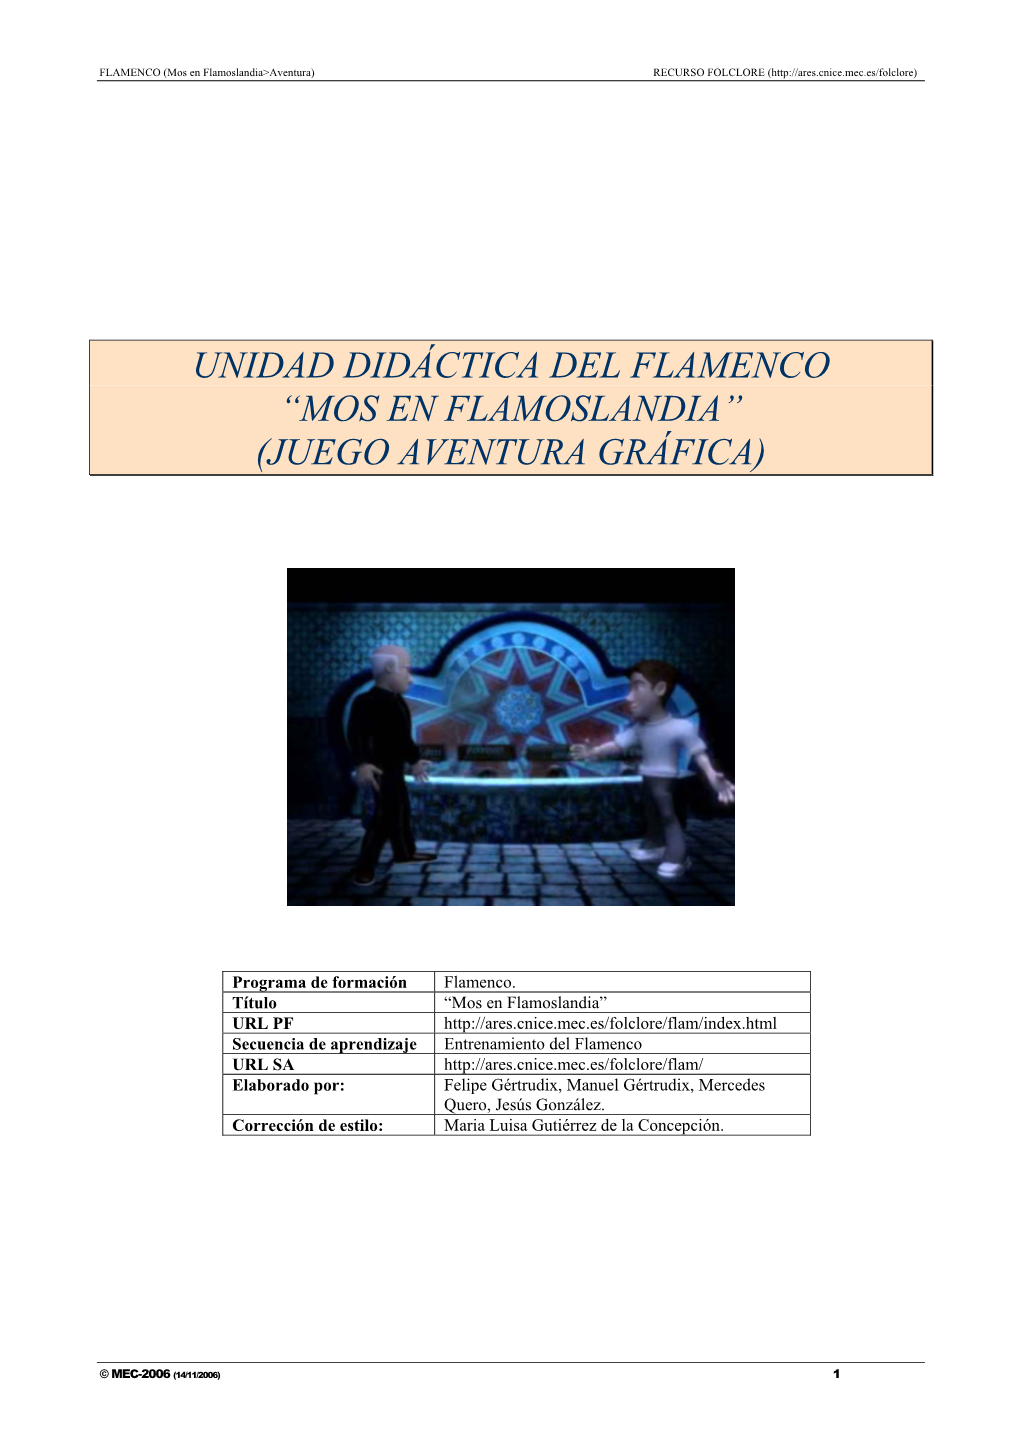 Unidad Didáctica Del Flamenco “Mos En Flamoslandia” (Juego Aventura Gráfica)